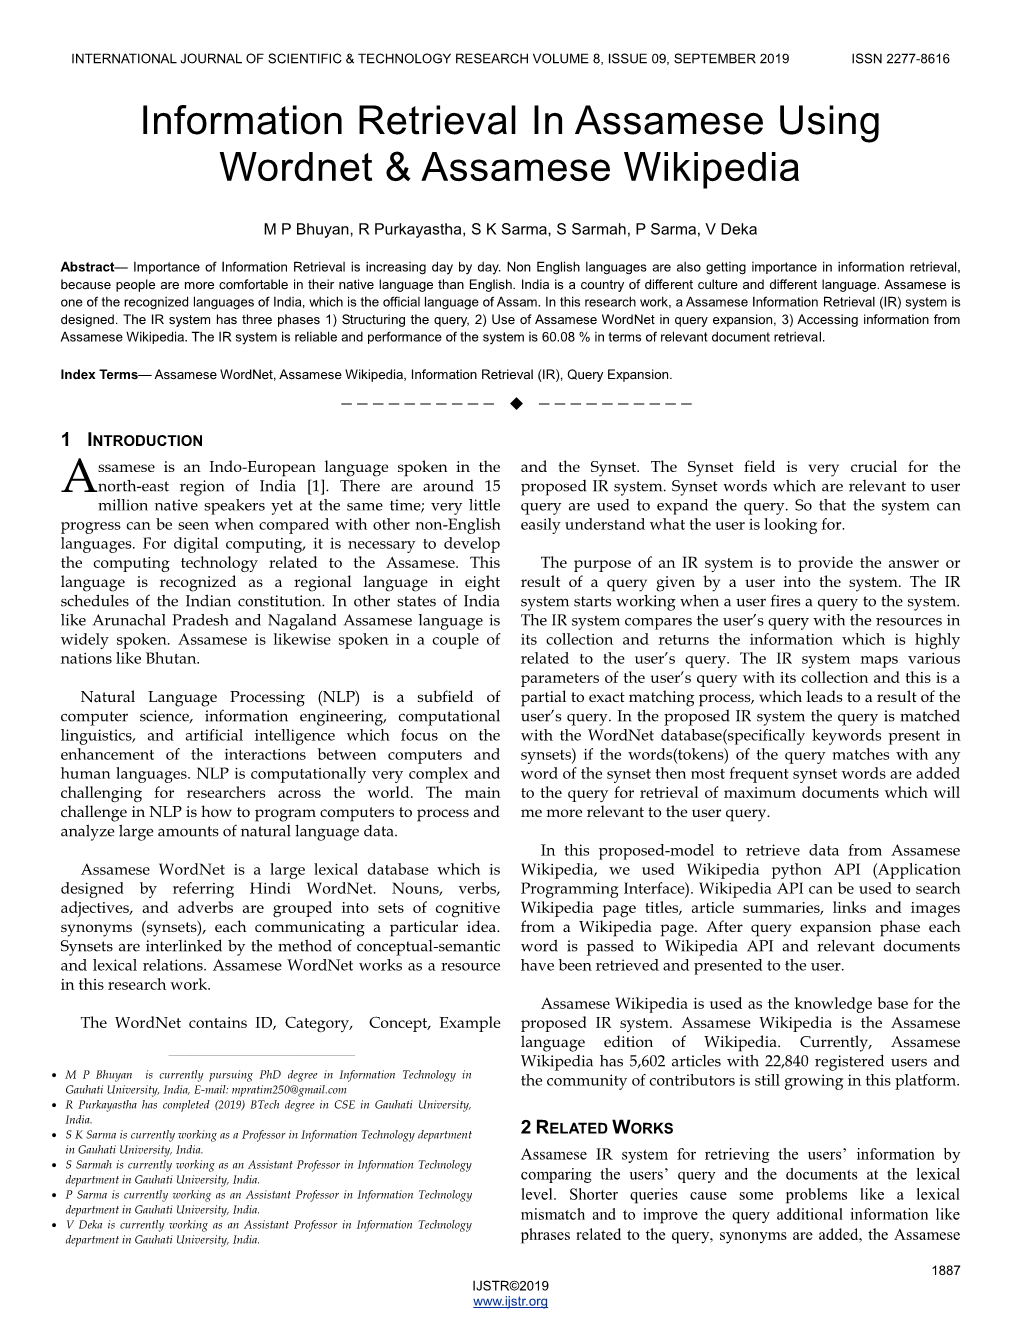 Information Retrieval in Assamese Using Wordnet & Assamese